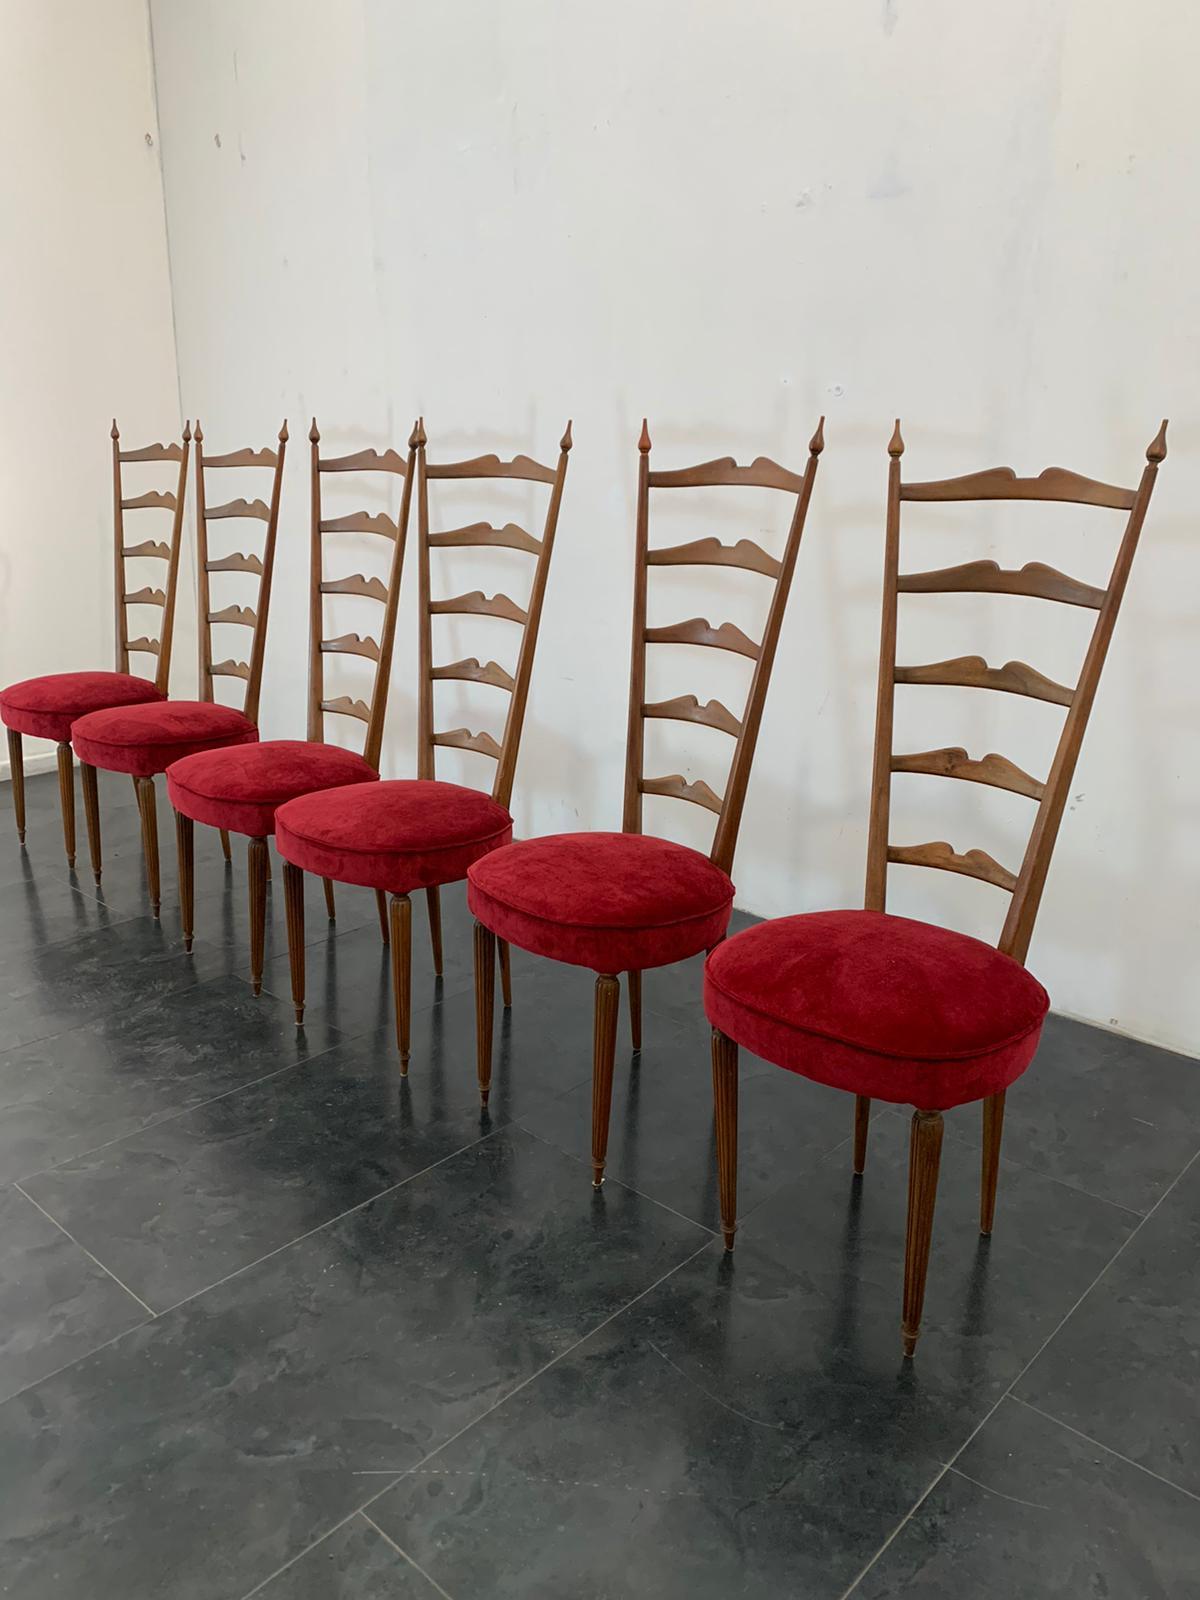 6 Hochlehnige Stühle von Paolo Buffa 1950er Jahre.